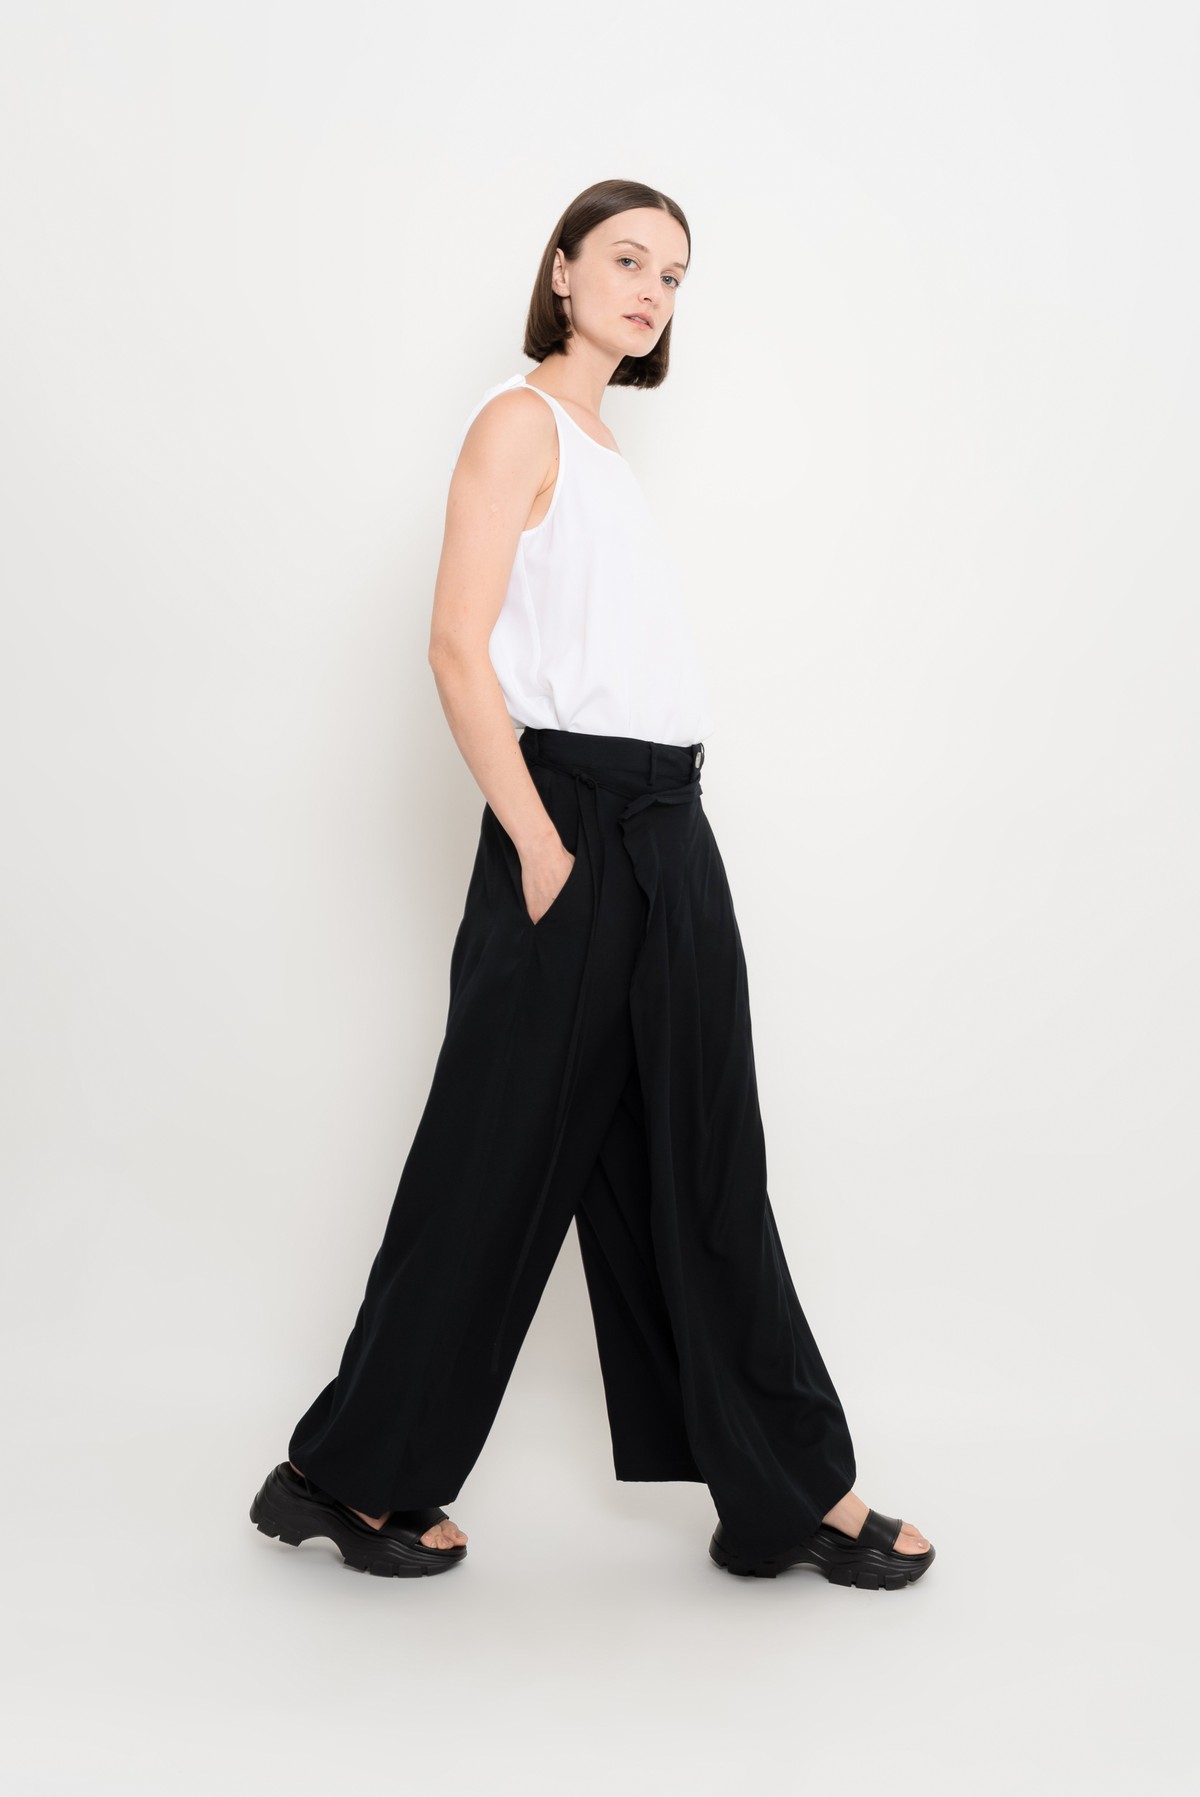 saia-calça transpassada em modal | modal crossover culottes pants